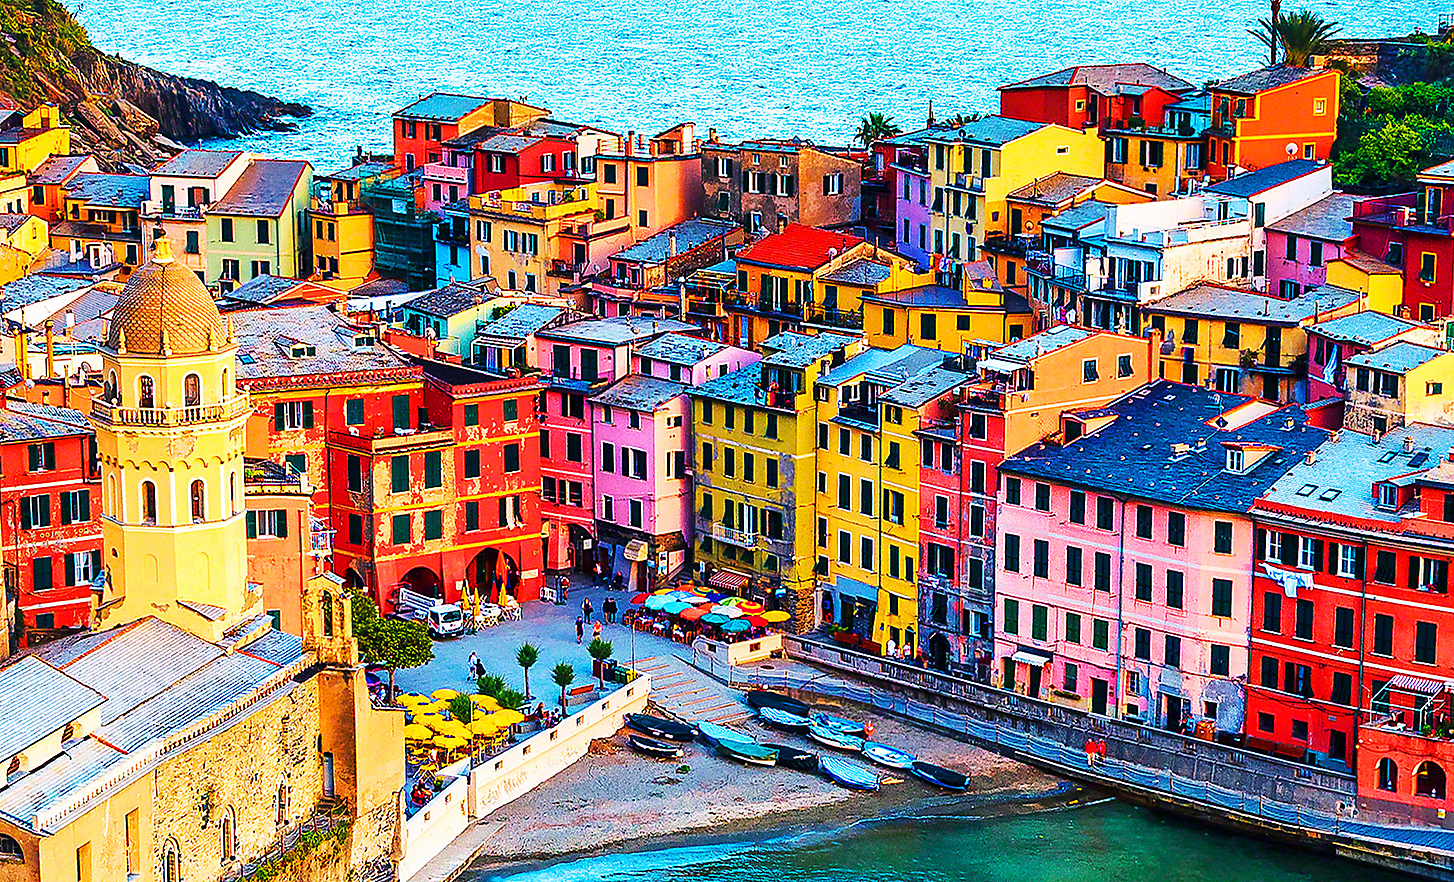 Изображение на слънчев малък крайморски град с множество ярко оцветени сгради, кафенета и рибарски лодки